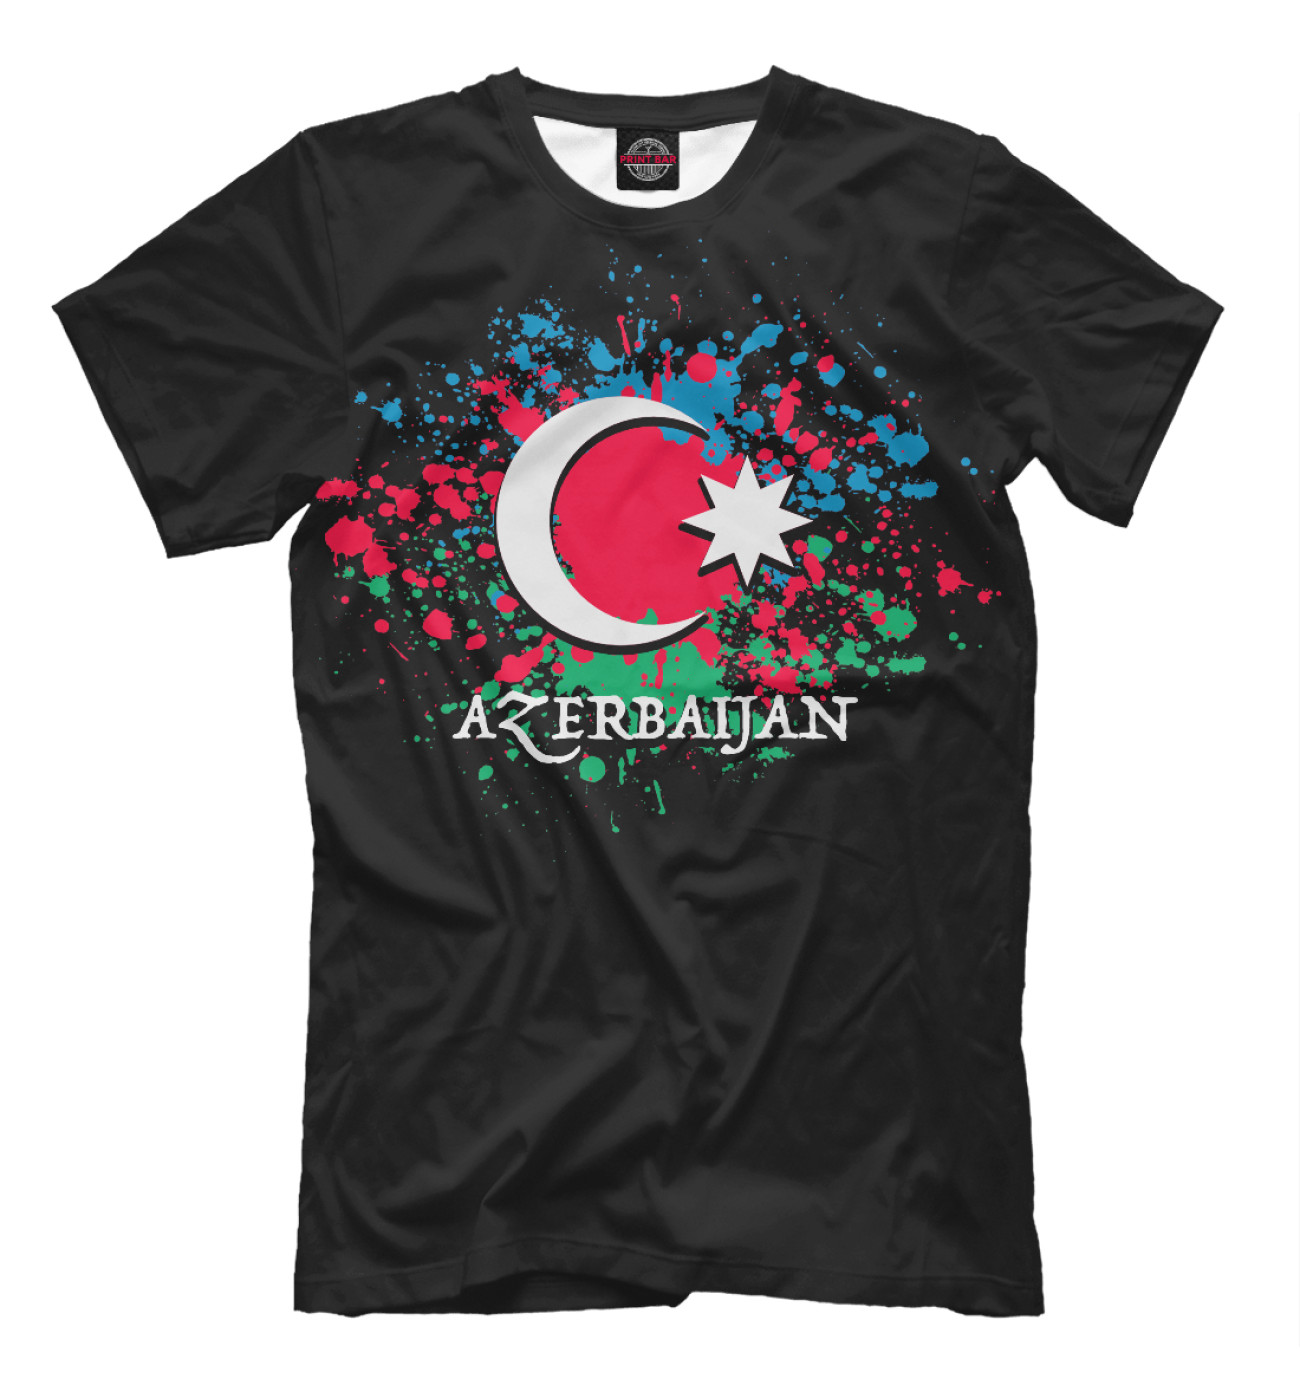 Мужская Футболка Azerbaijan, артикул: AZR-520382-fut-2